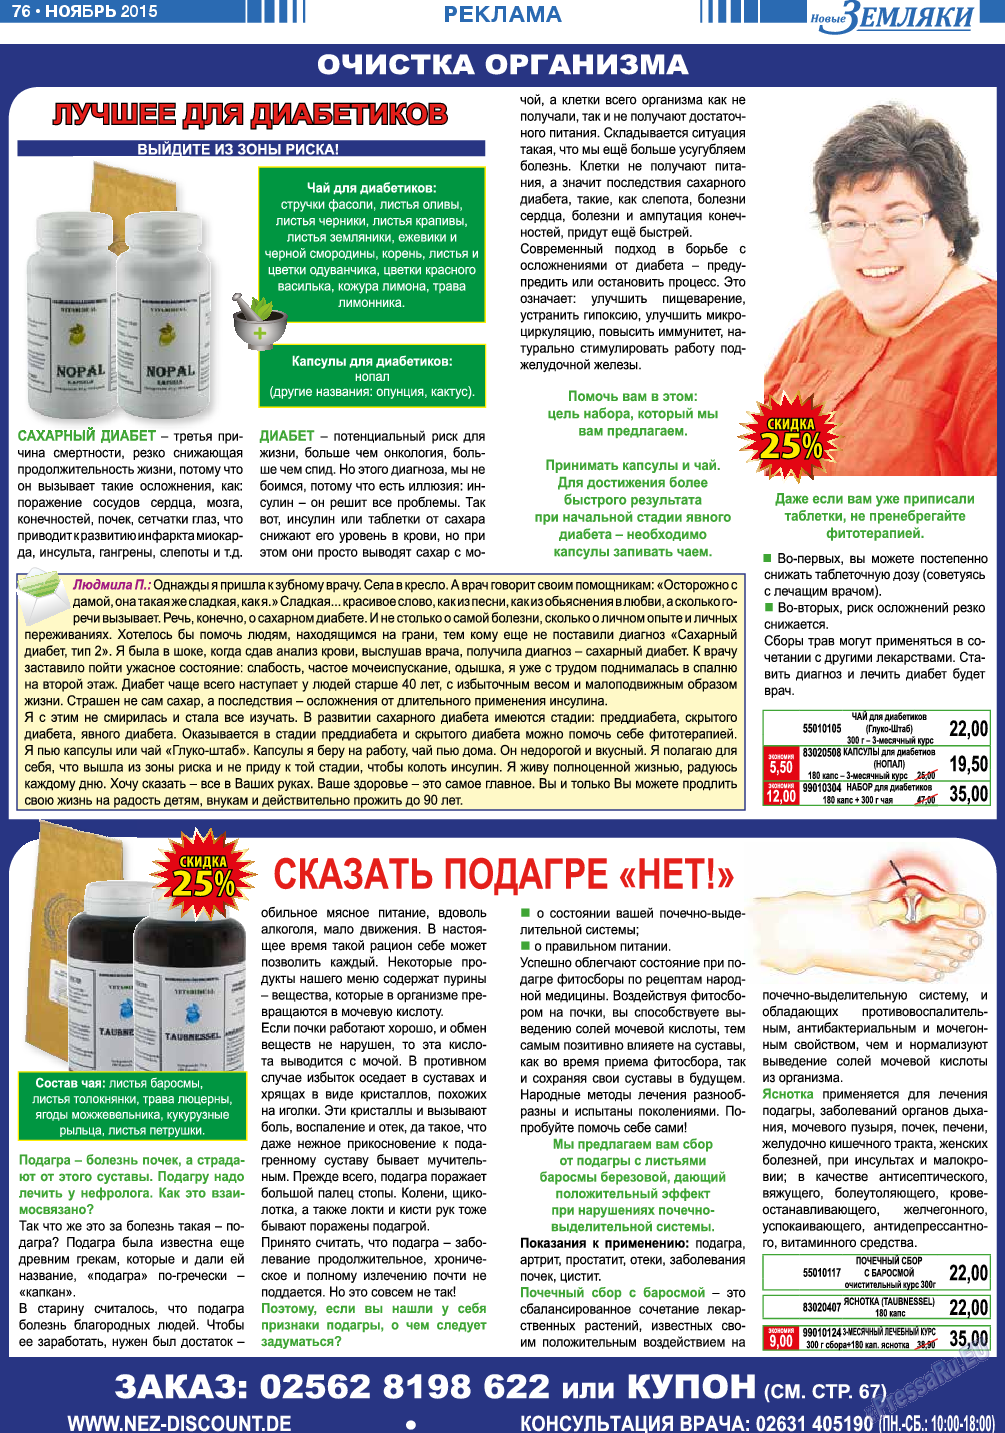 Новые Земляки (газета). 2015 год, номер 11, стр. 76